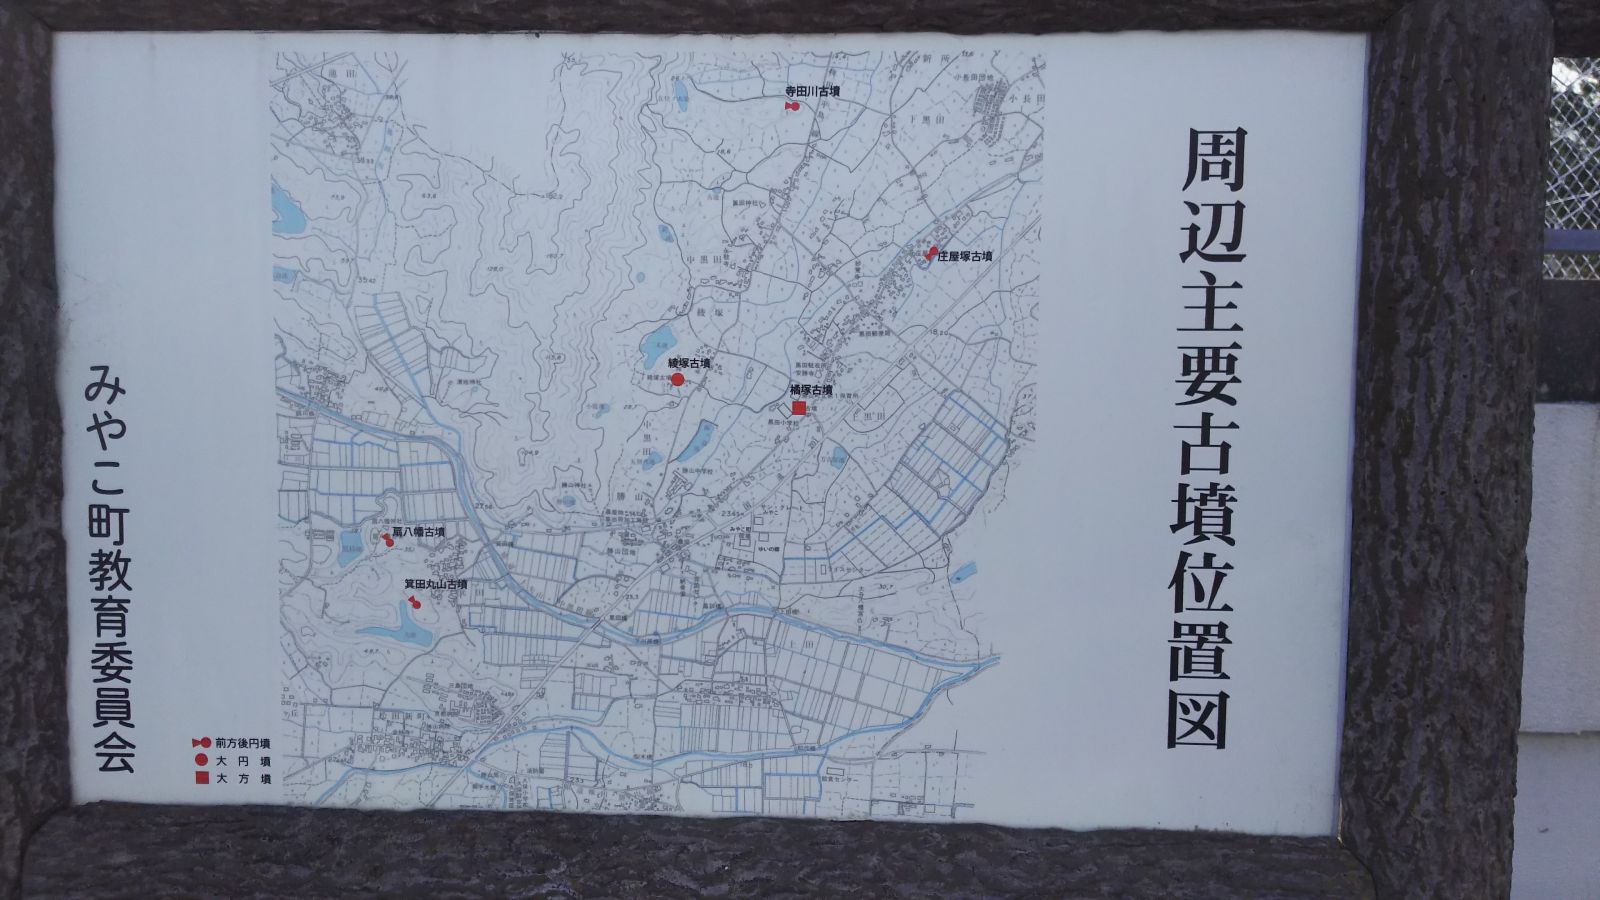 この地図の箕田丸山古墳。大変でした。